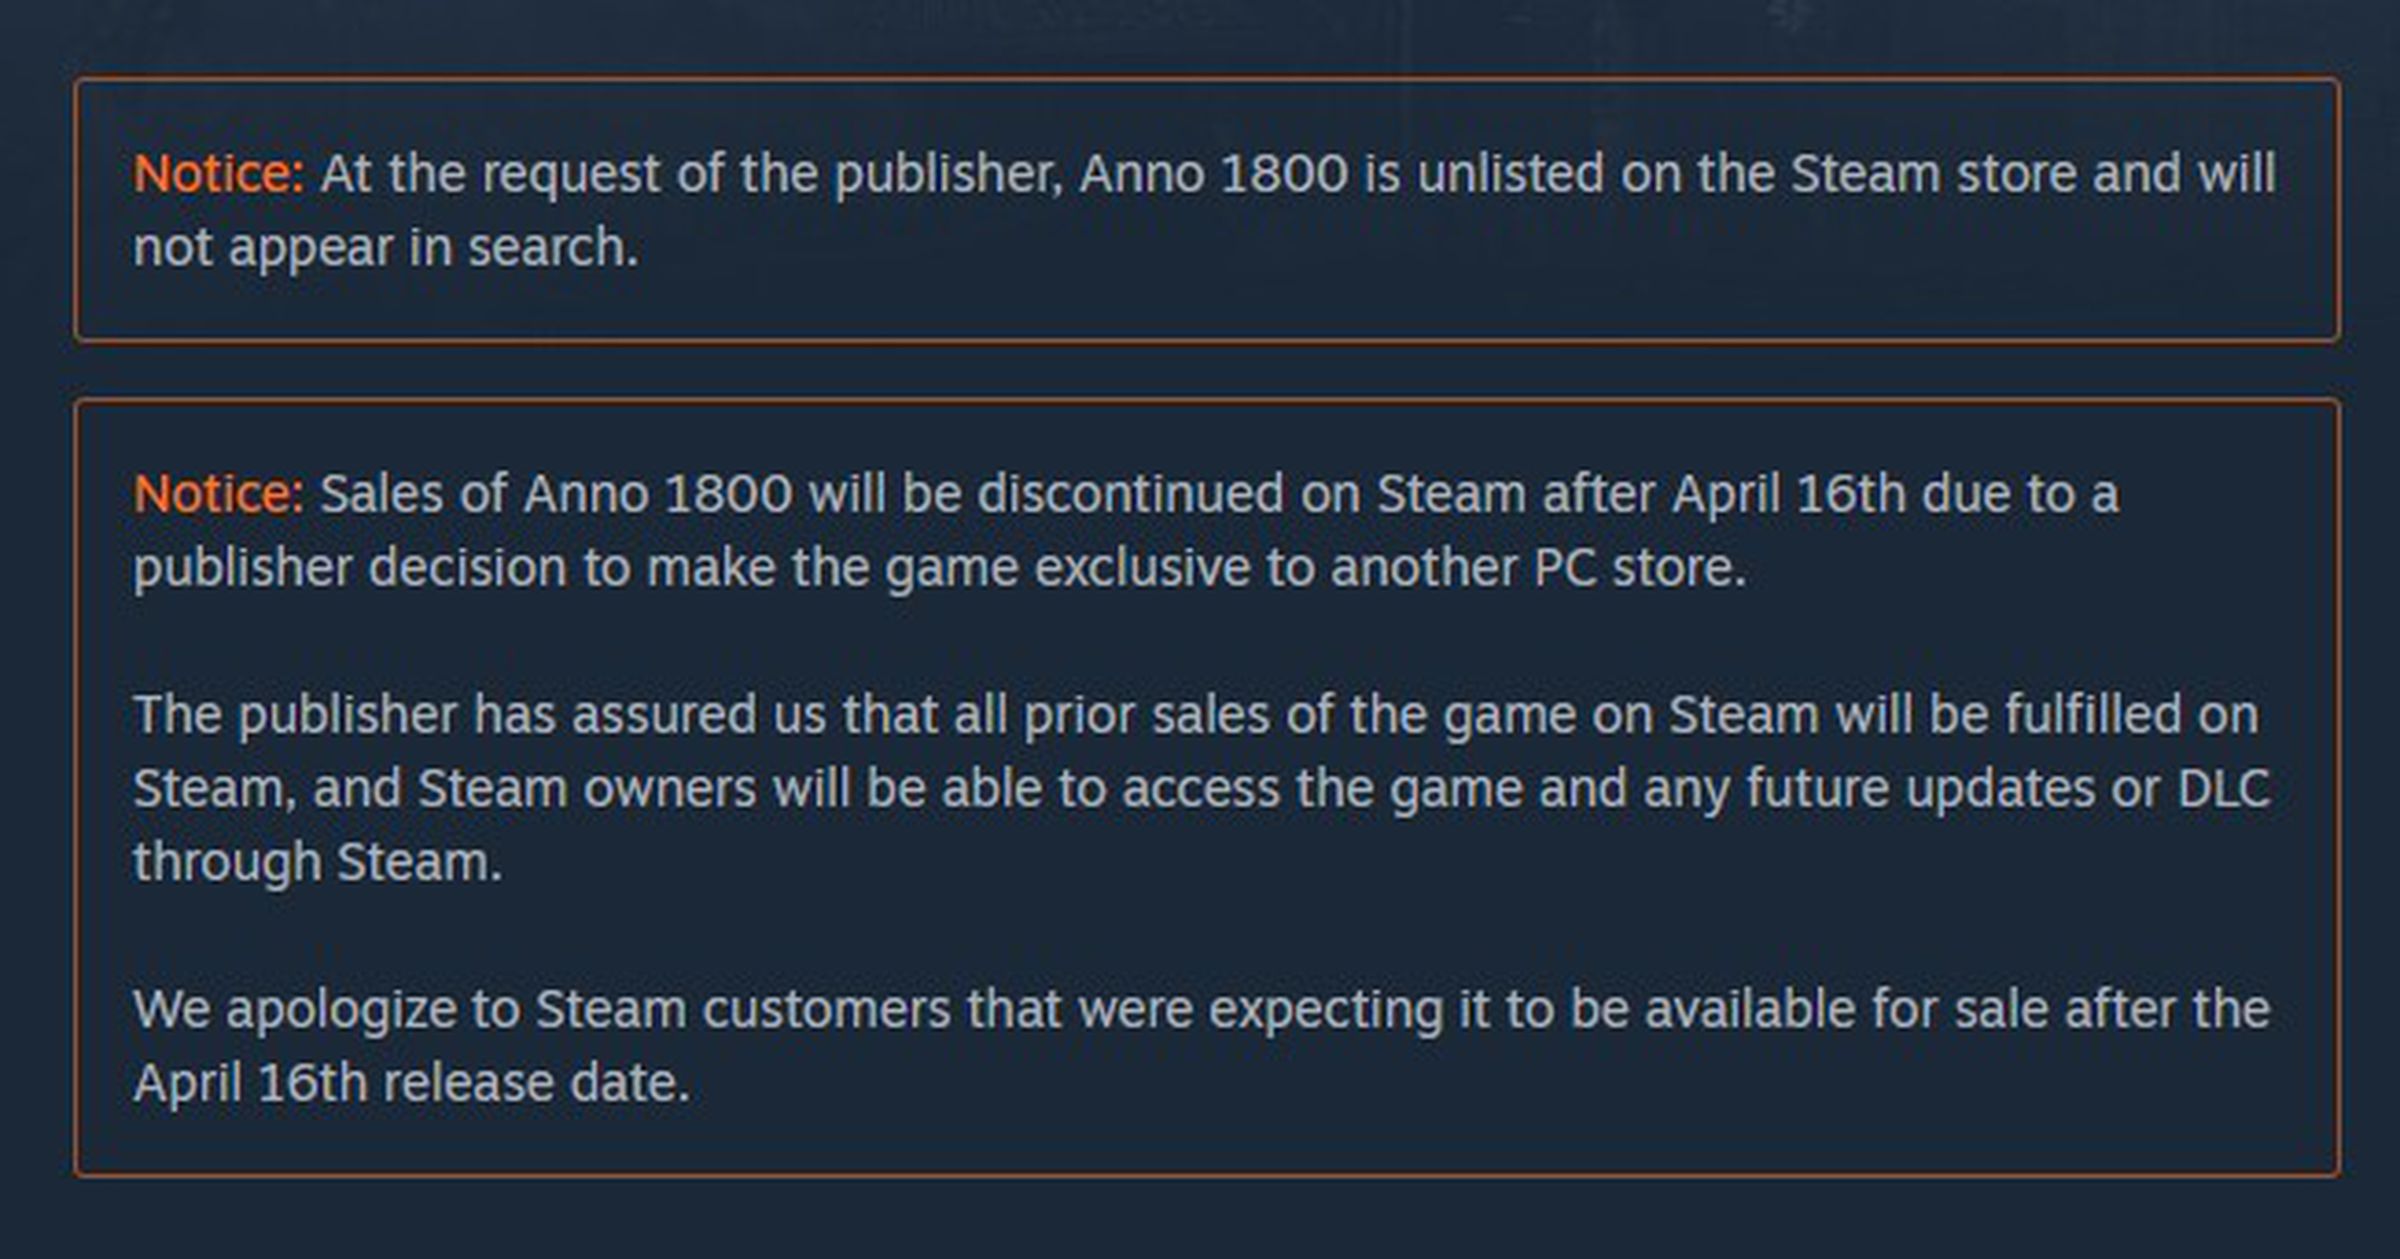 "Uyarı: Bir yayıncının oyunu başka bir PC mağazasına özel yapma kararı nedeniyle Anno 1800'ün satışları 16 Nisan'dan sonra Steam'de durdurulacaktır."